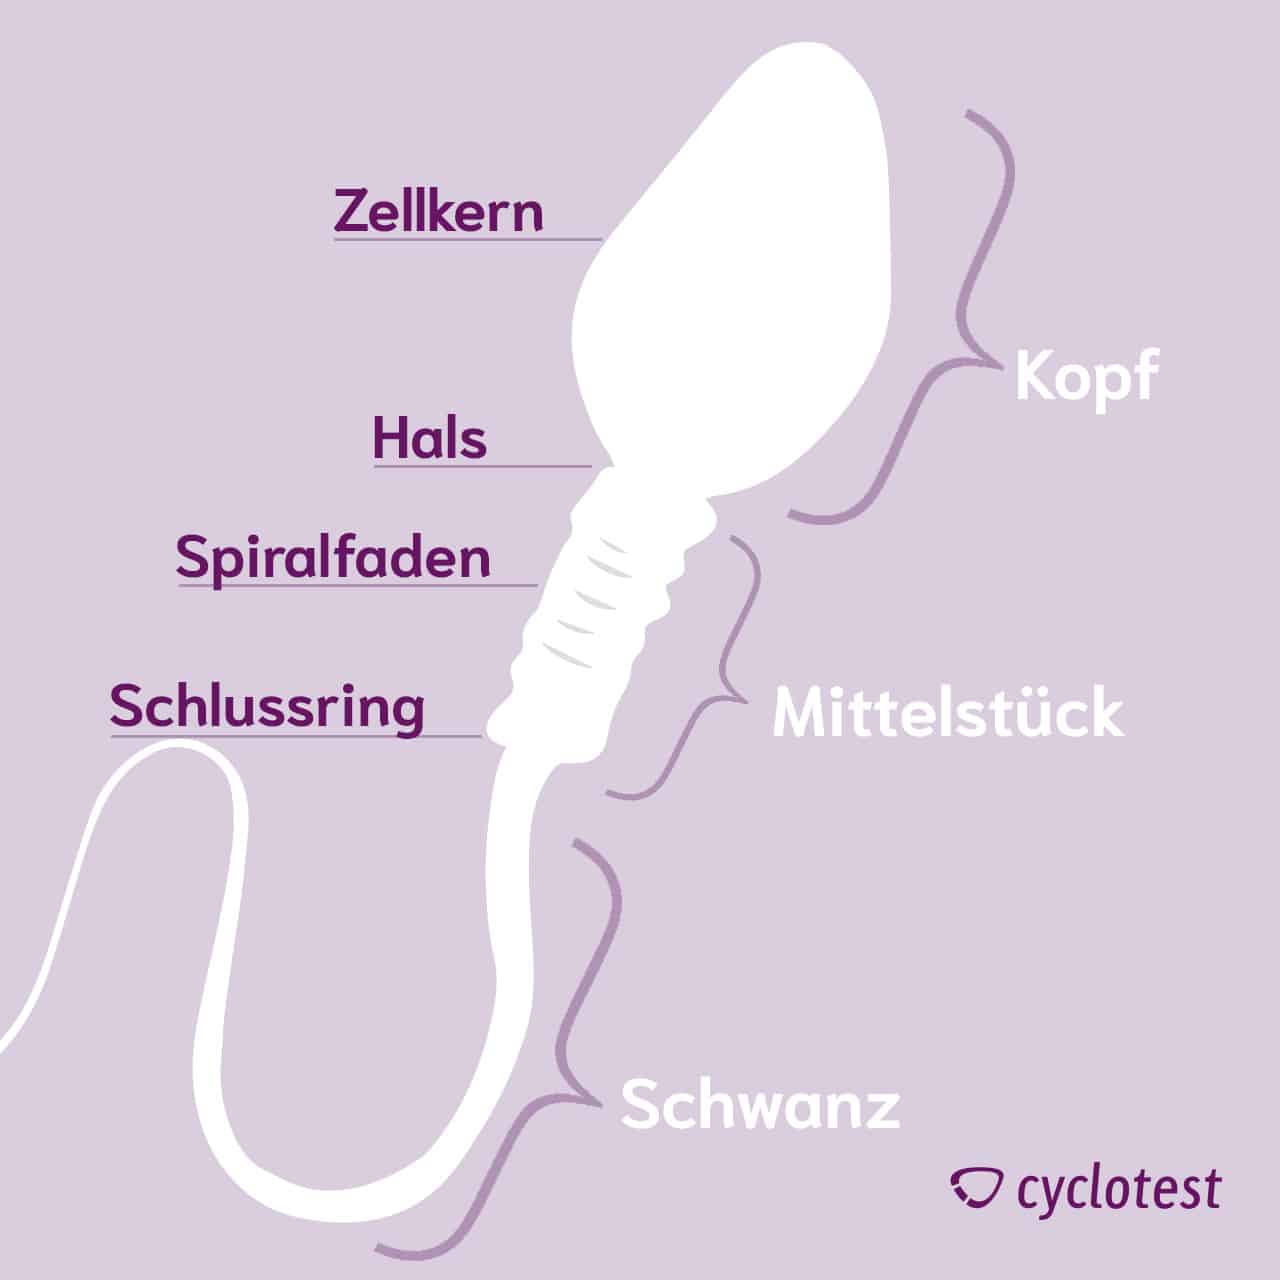 Die Grafik zeigt, dass der Aufbau eines Spermiums aus Kopf, Mittelstück und Schwanz besteht.